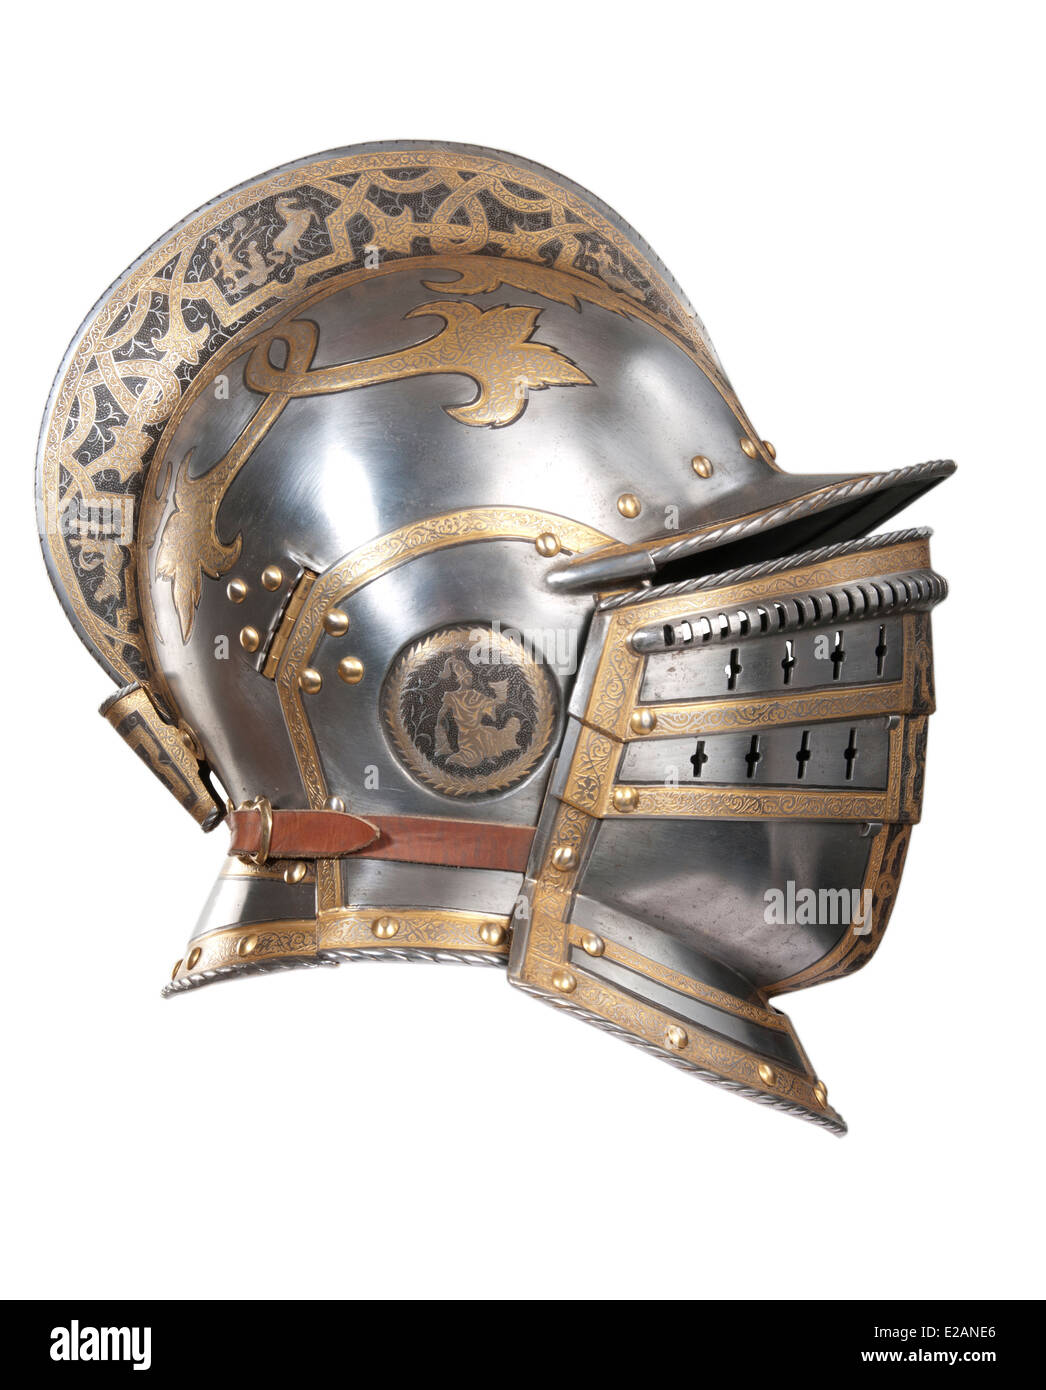 Iron helmet of the medieval knight. Very heavy headdress. Stock Photo